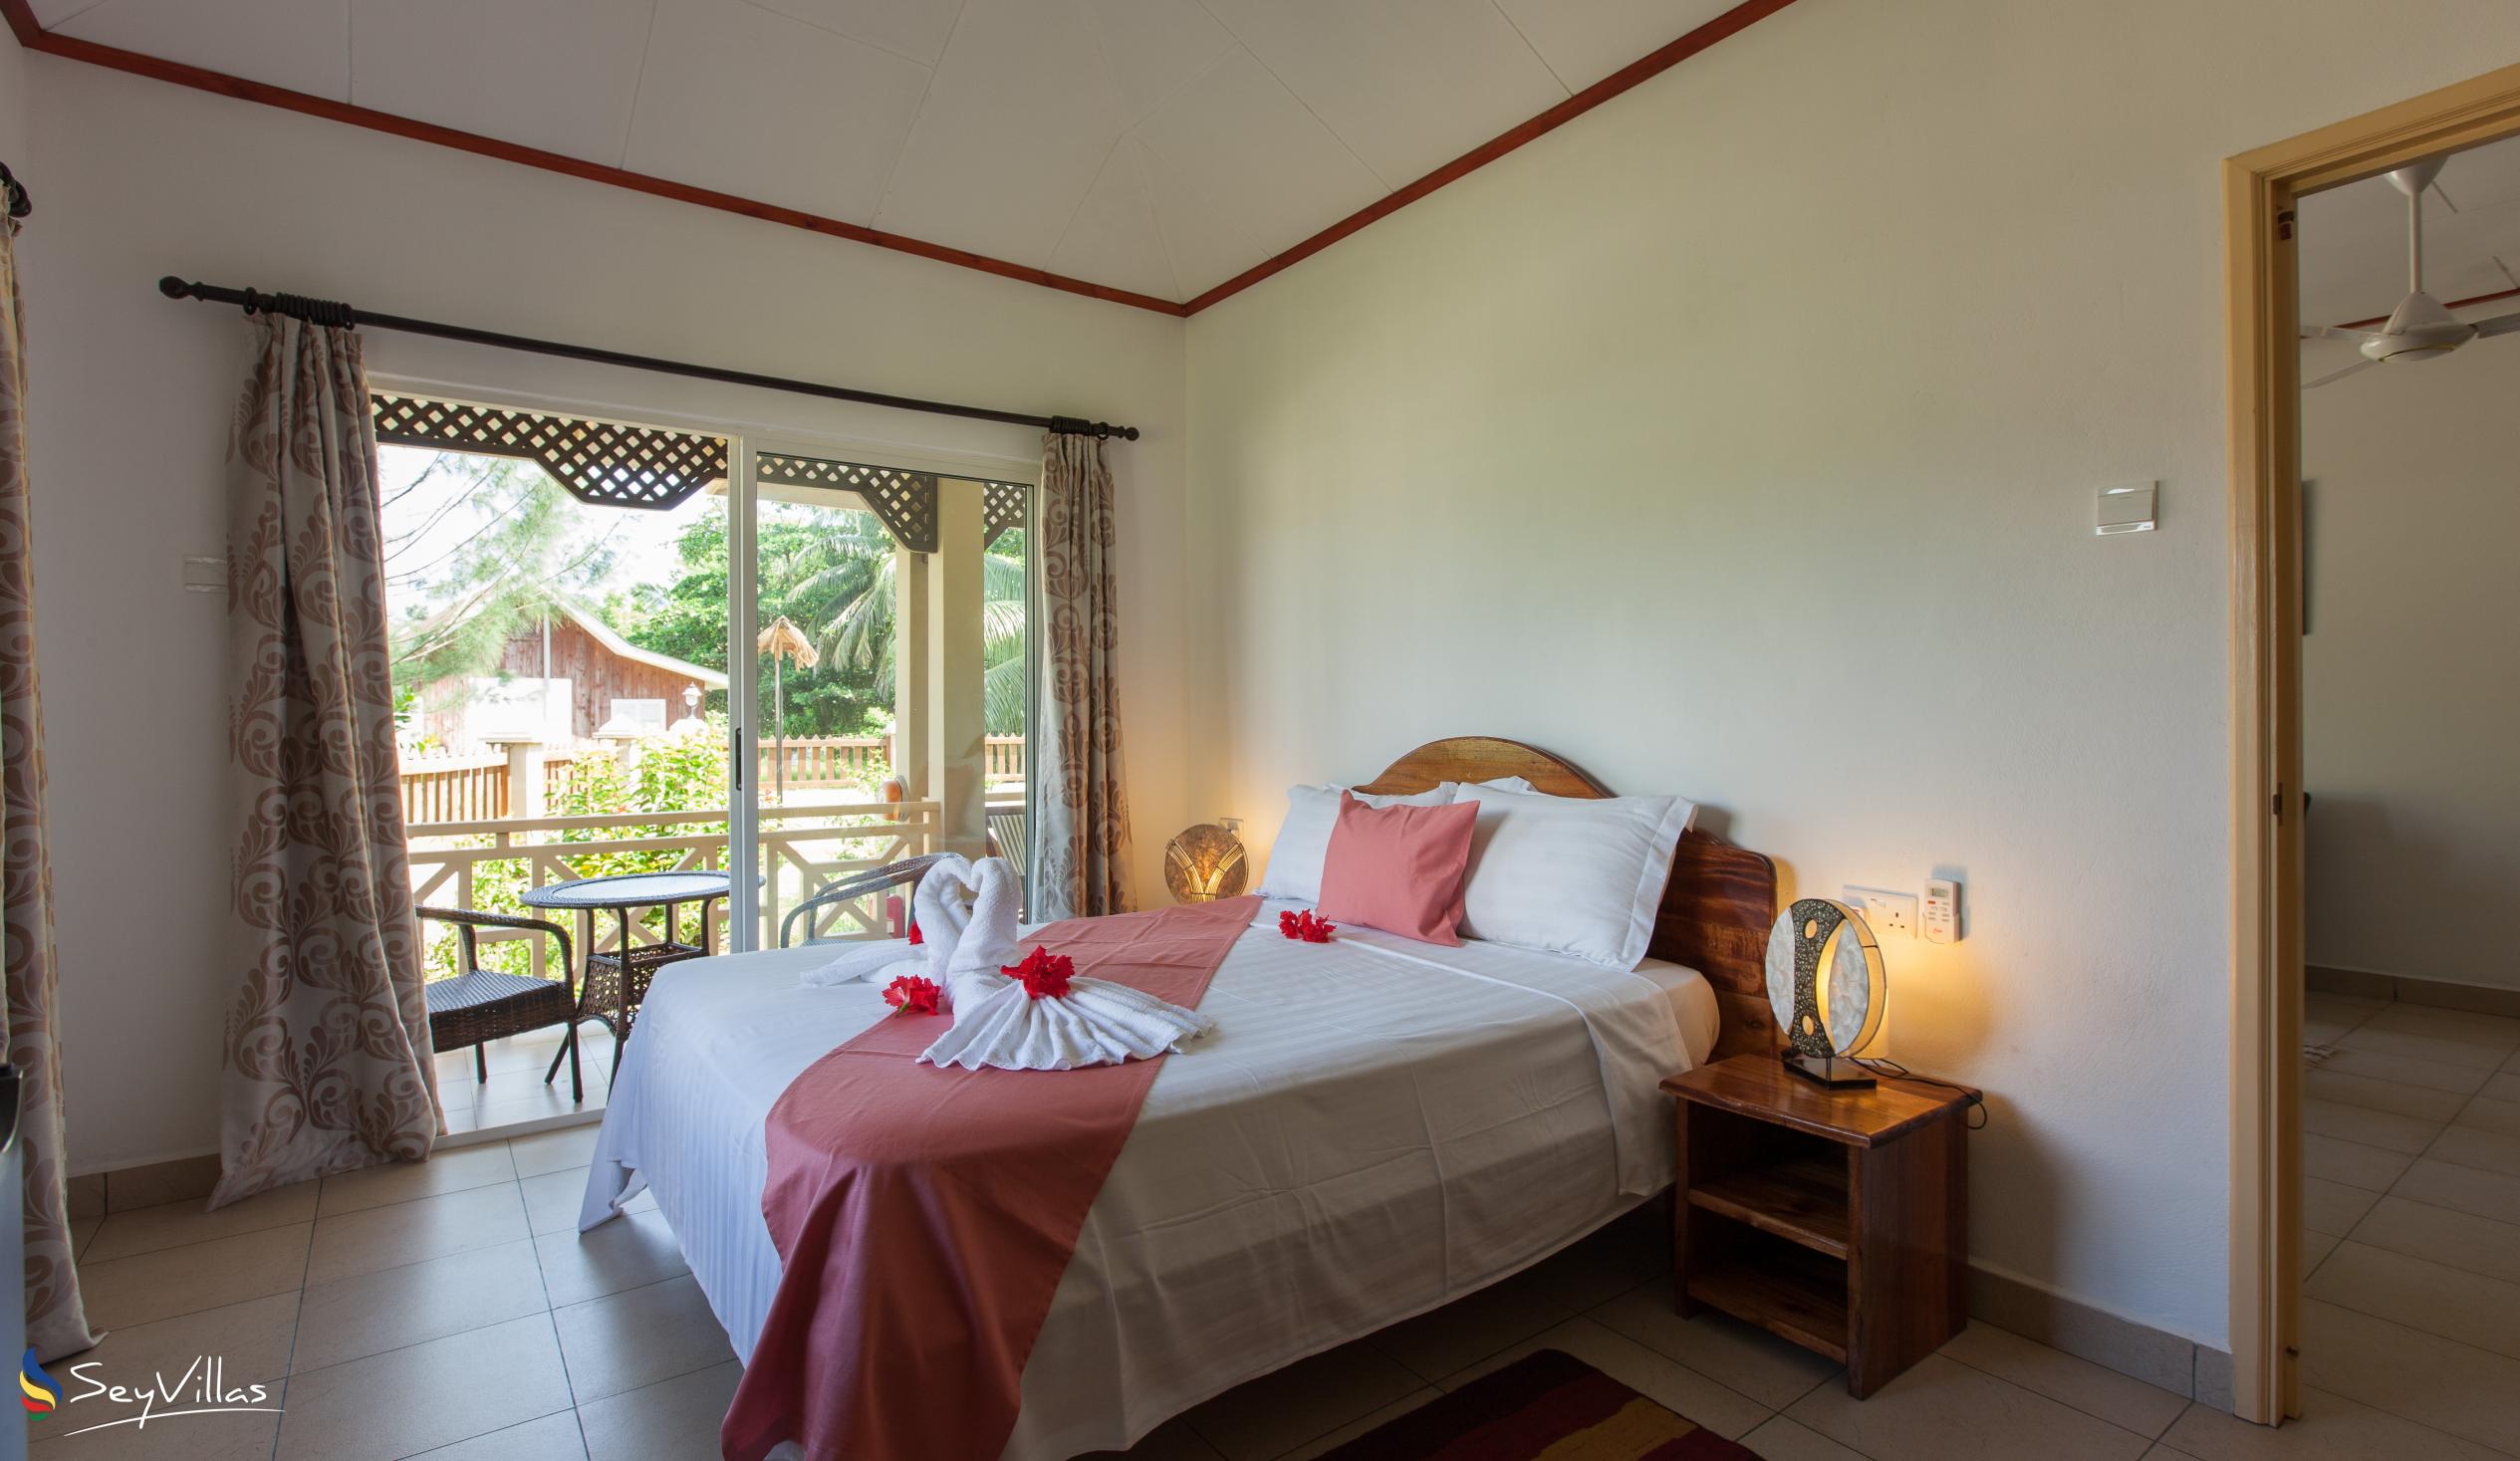 Foto 55: Hostellerie La Digue - Bungalow con 2 camere da letto - La Digue (Seychelles)